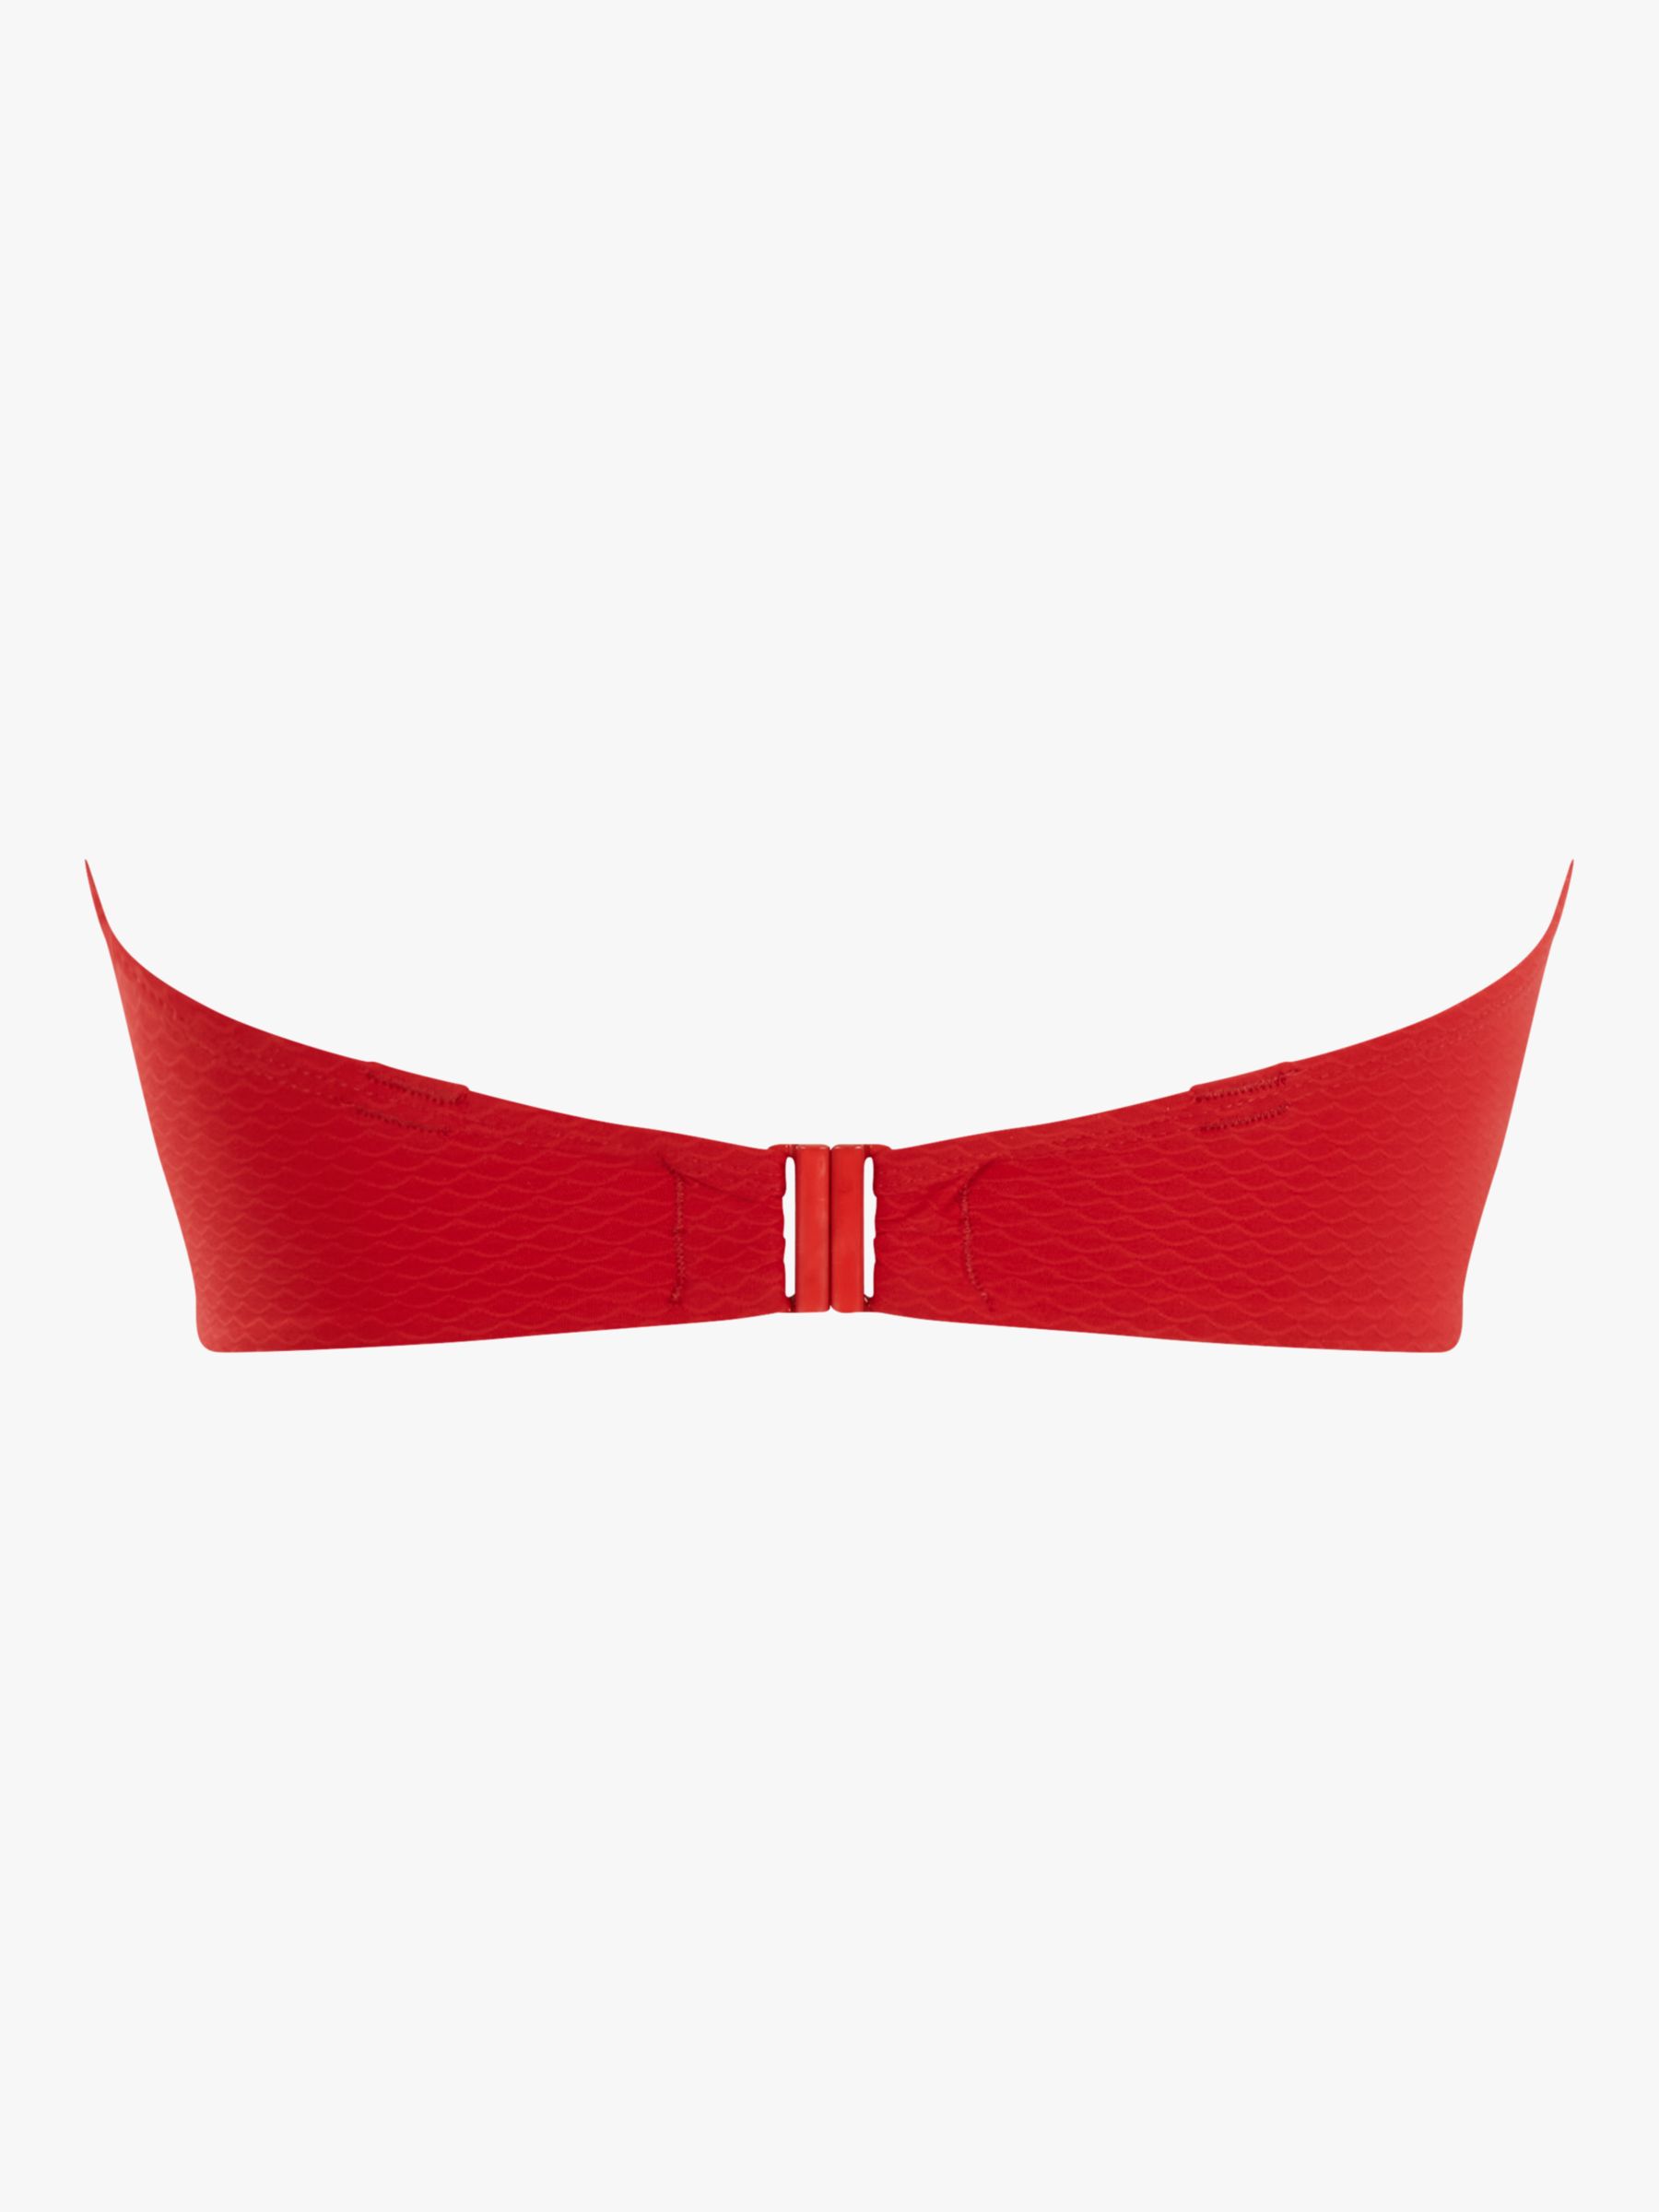 Panache Marianna Bandeau Bikini Top, Crimson, 32GG